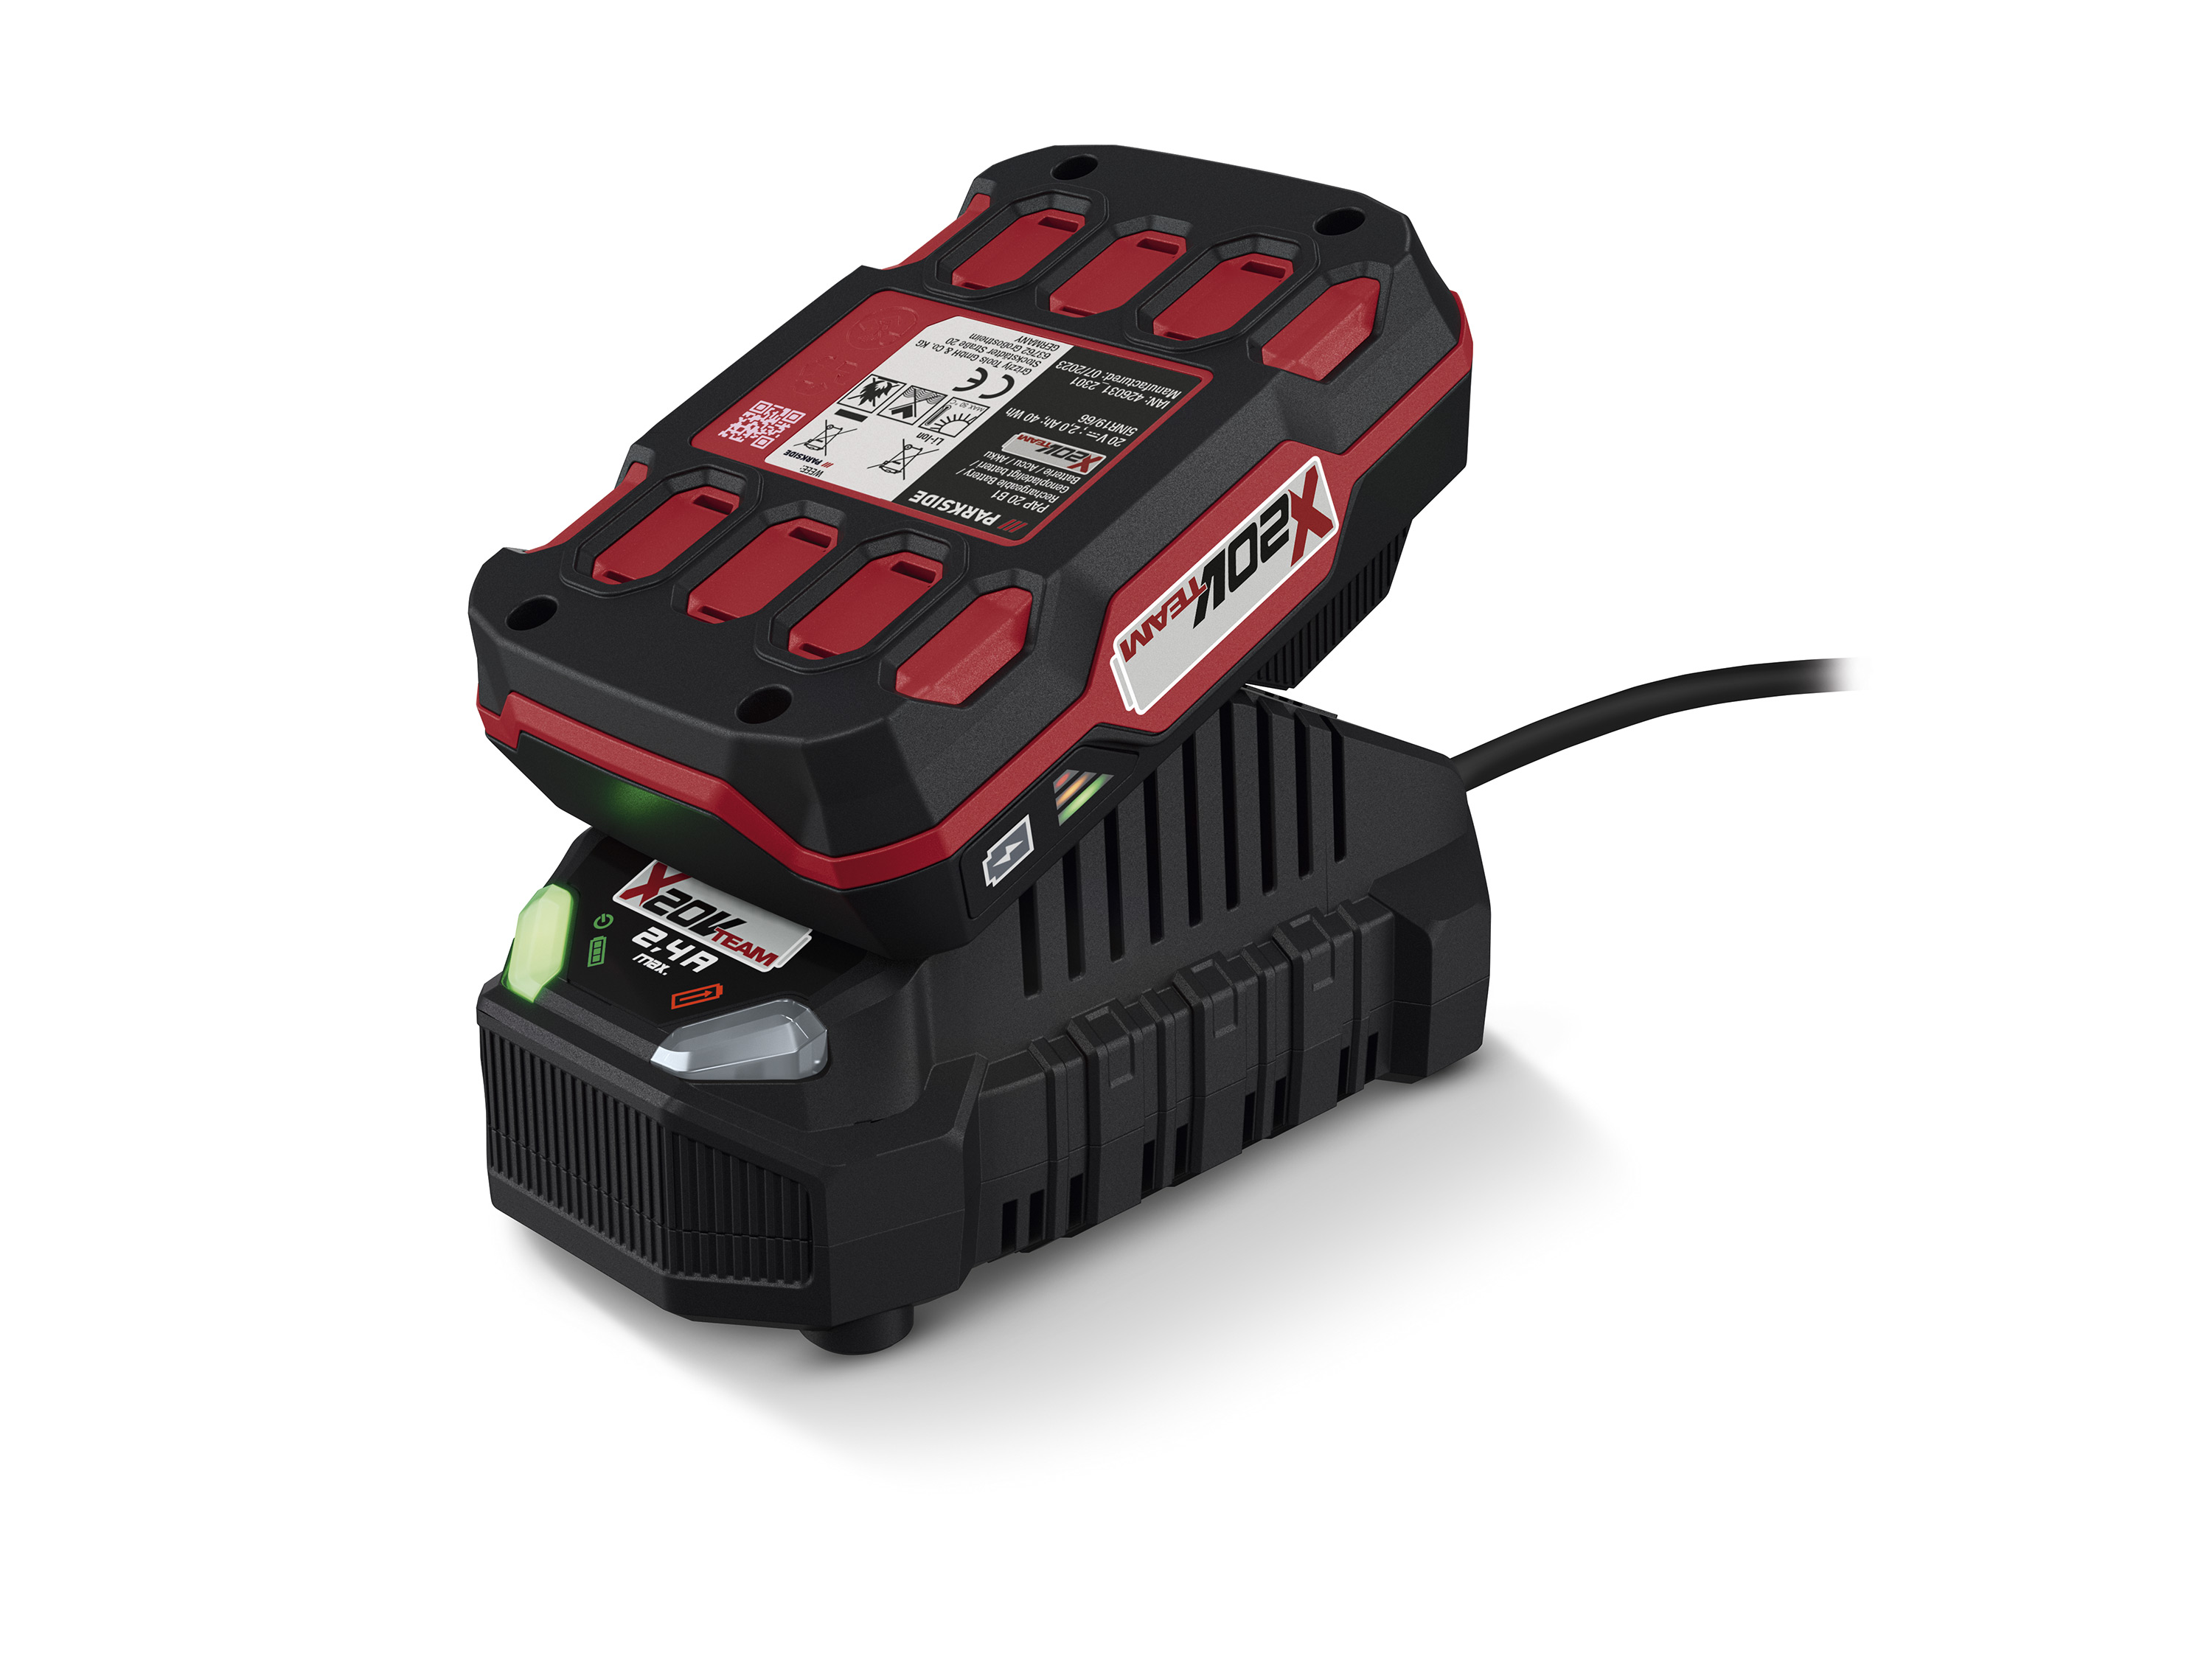 PARKSIDE® Batterie PAP 20 B1, 20 V, 2 Ah et chargeur PLG 20 C1, 2,4 A